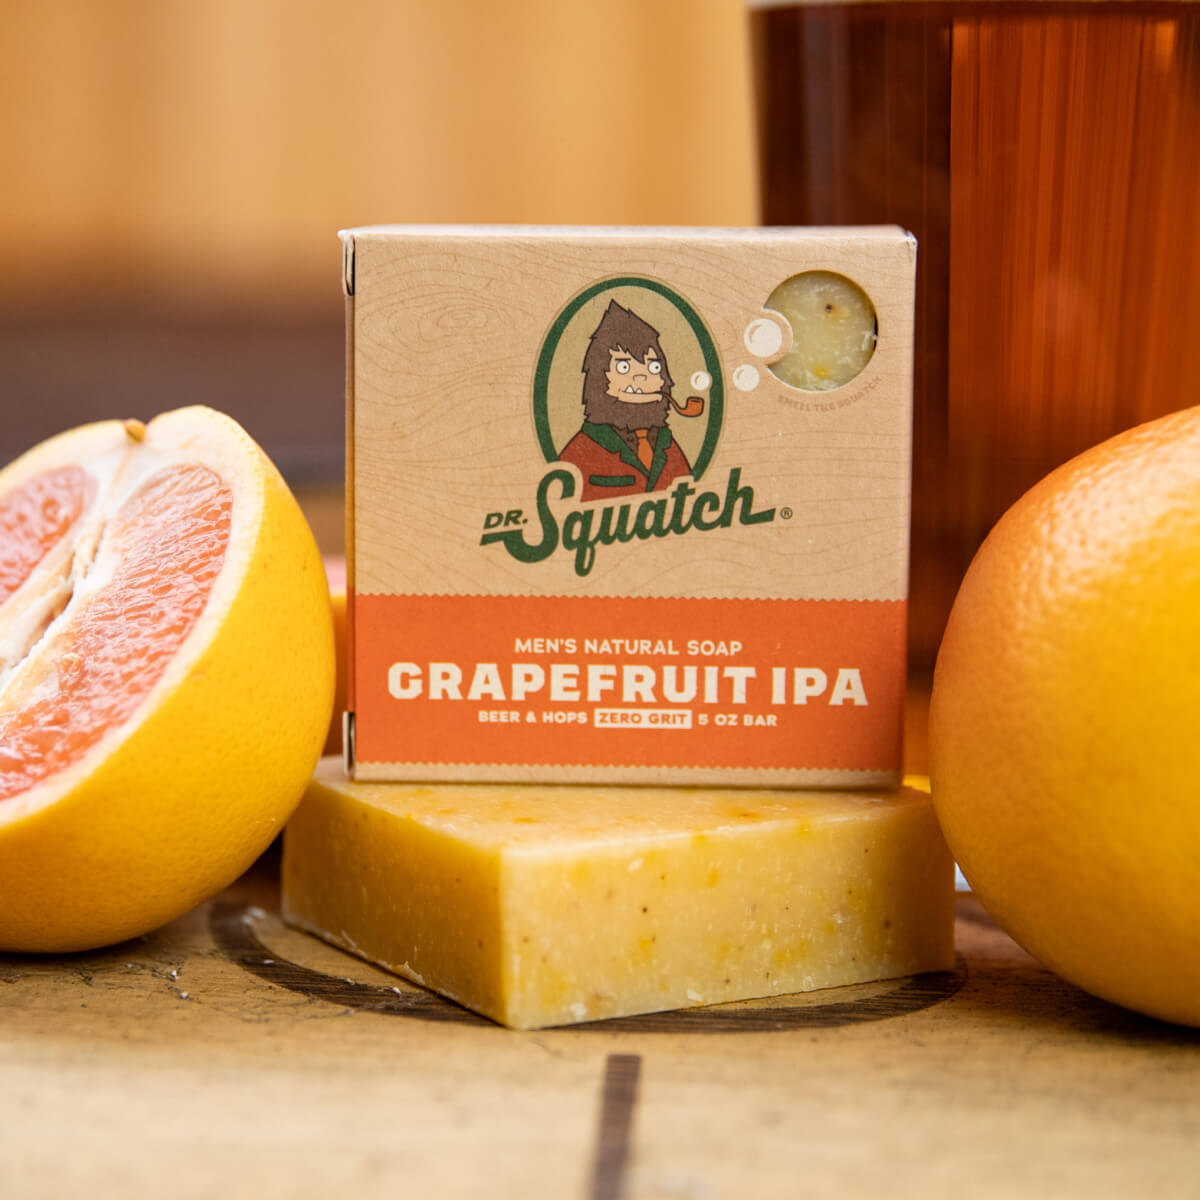 Grapefruit IPA Soap - Dr. Squatch